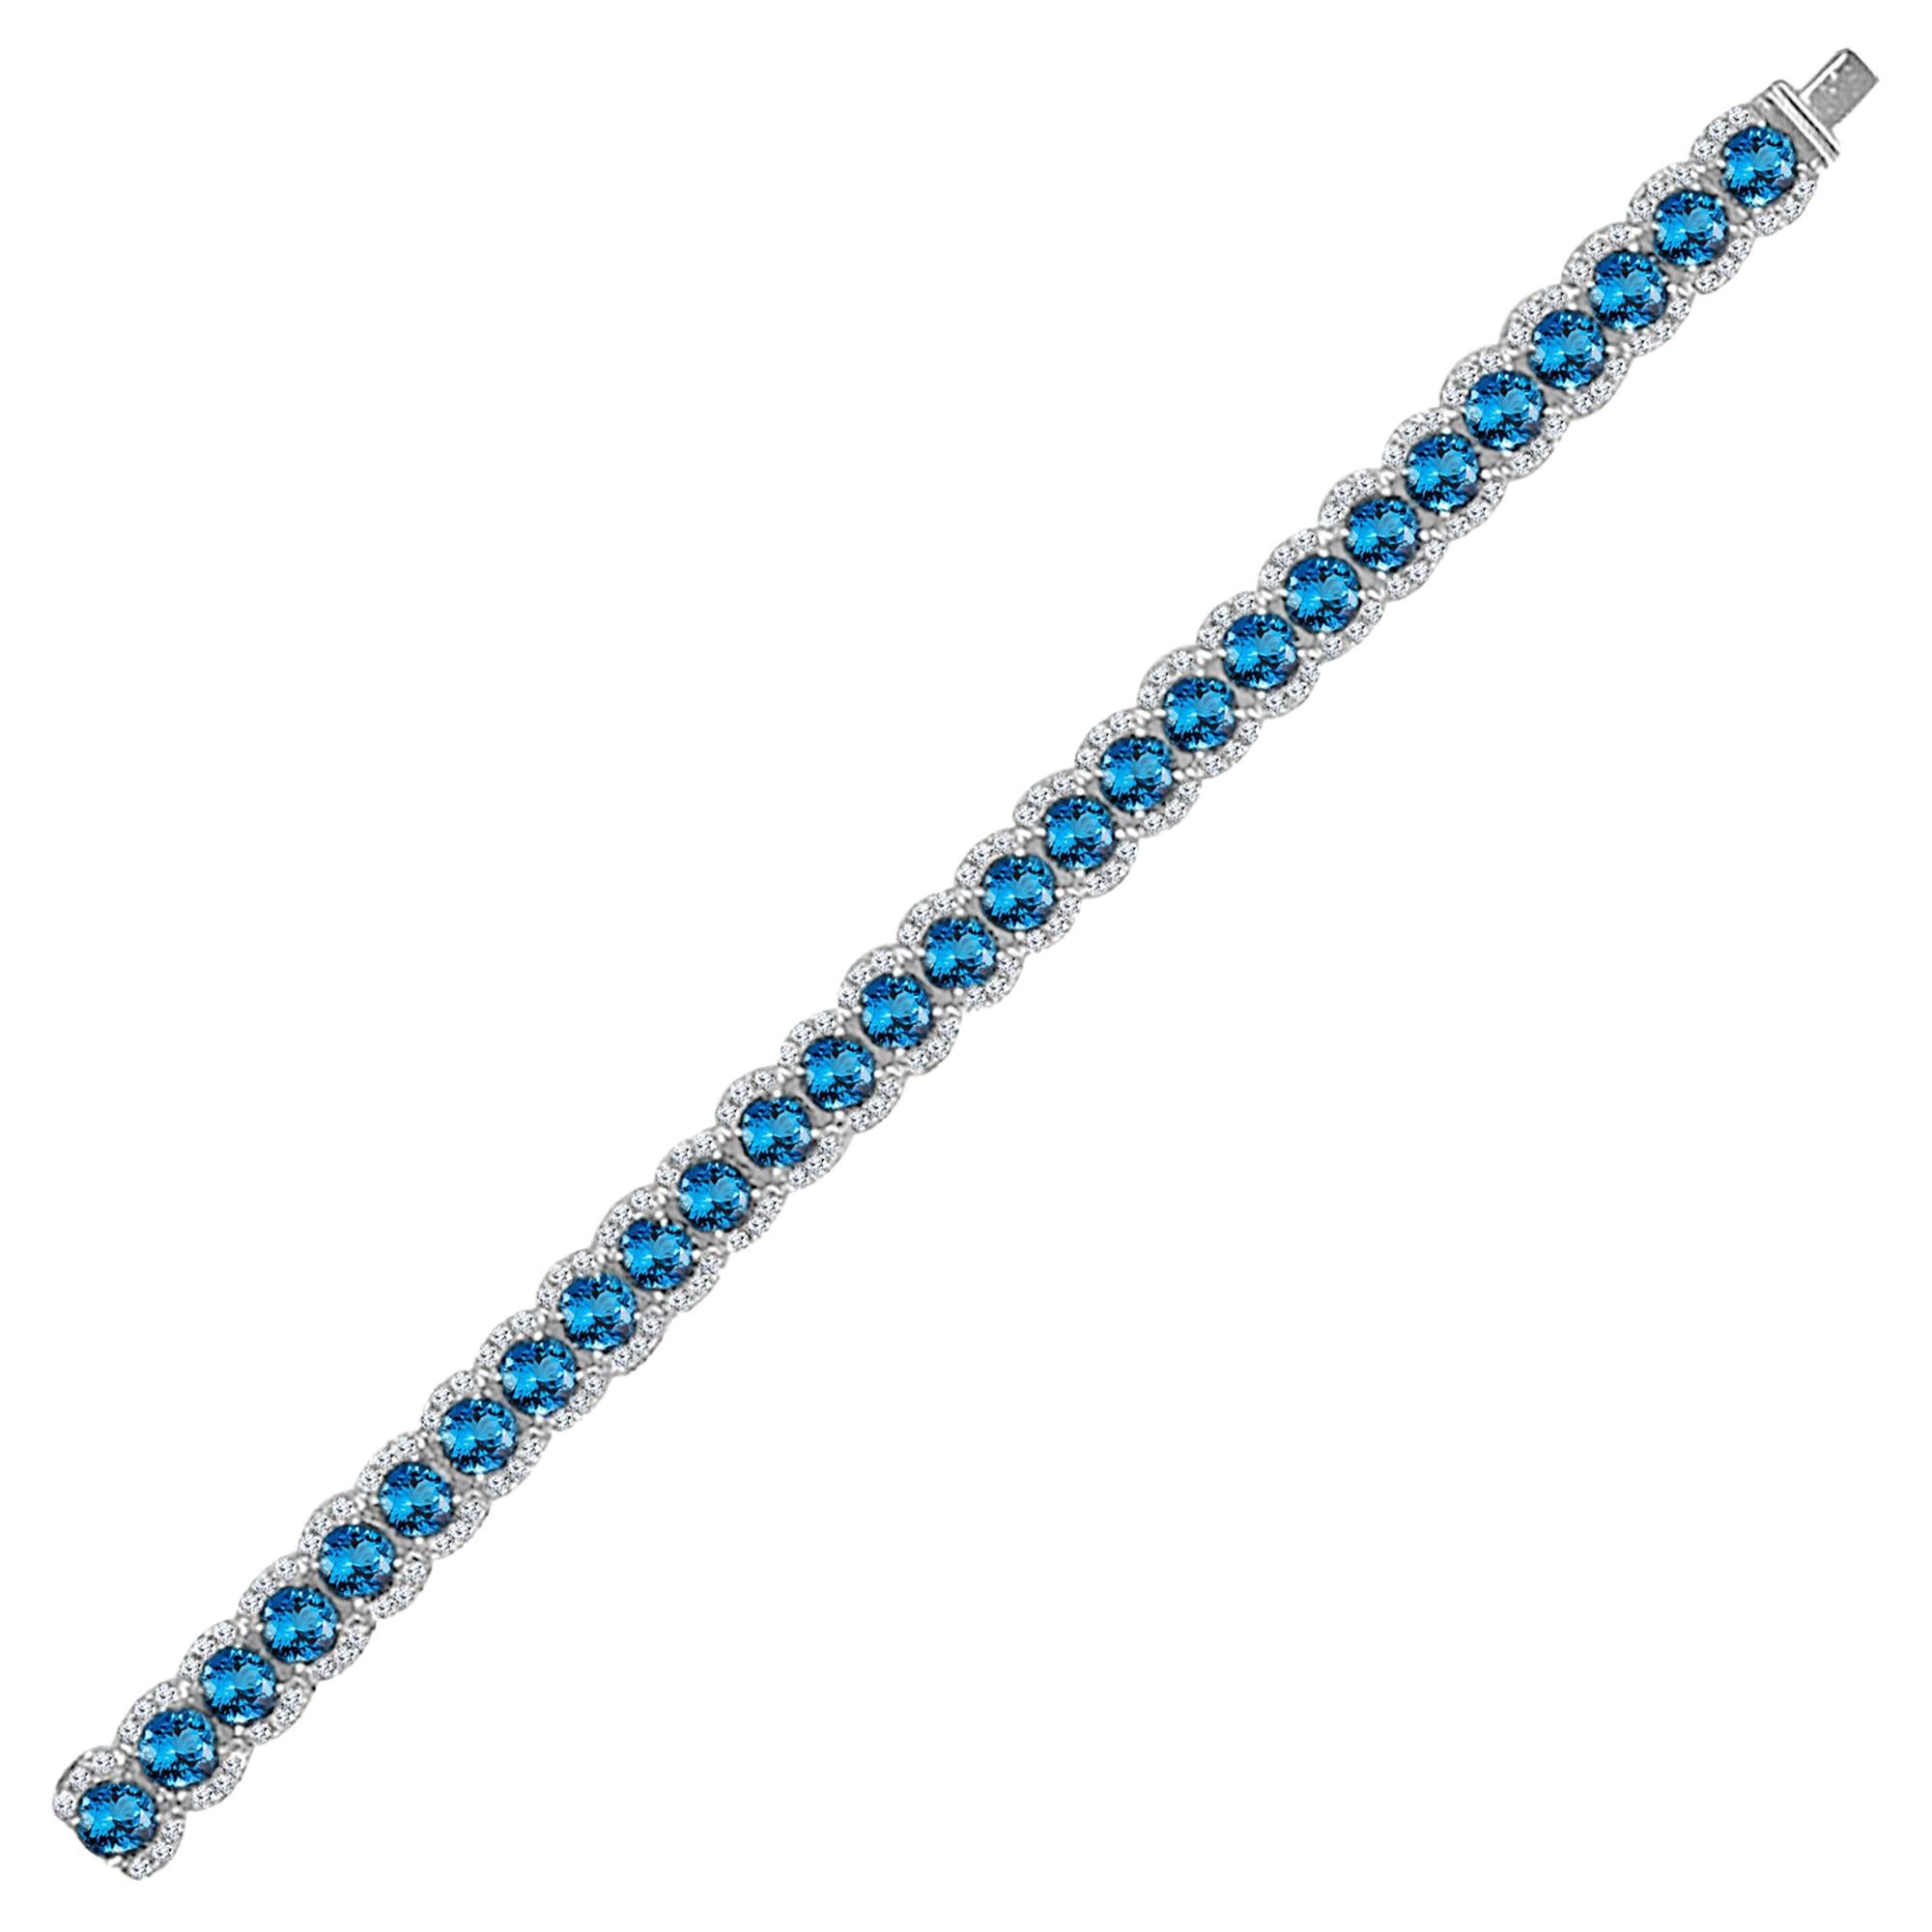 Rehaussez votre look et embrassez la beauté intemporelle avec ce superbe bracelet, orné de 28 pierres précieuses Topaze Bleue Step Cut, pesant chacune 3,10 carats, et gracieusement accentué par des diamants naturels ronds brillants. Fabriqué avec